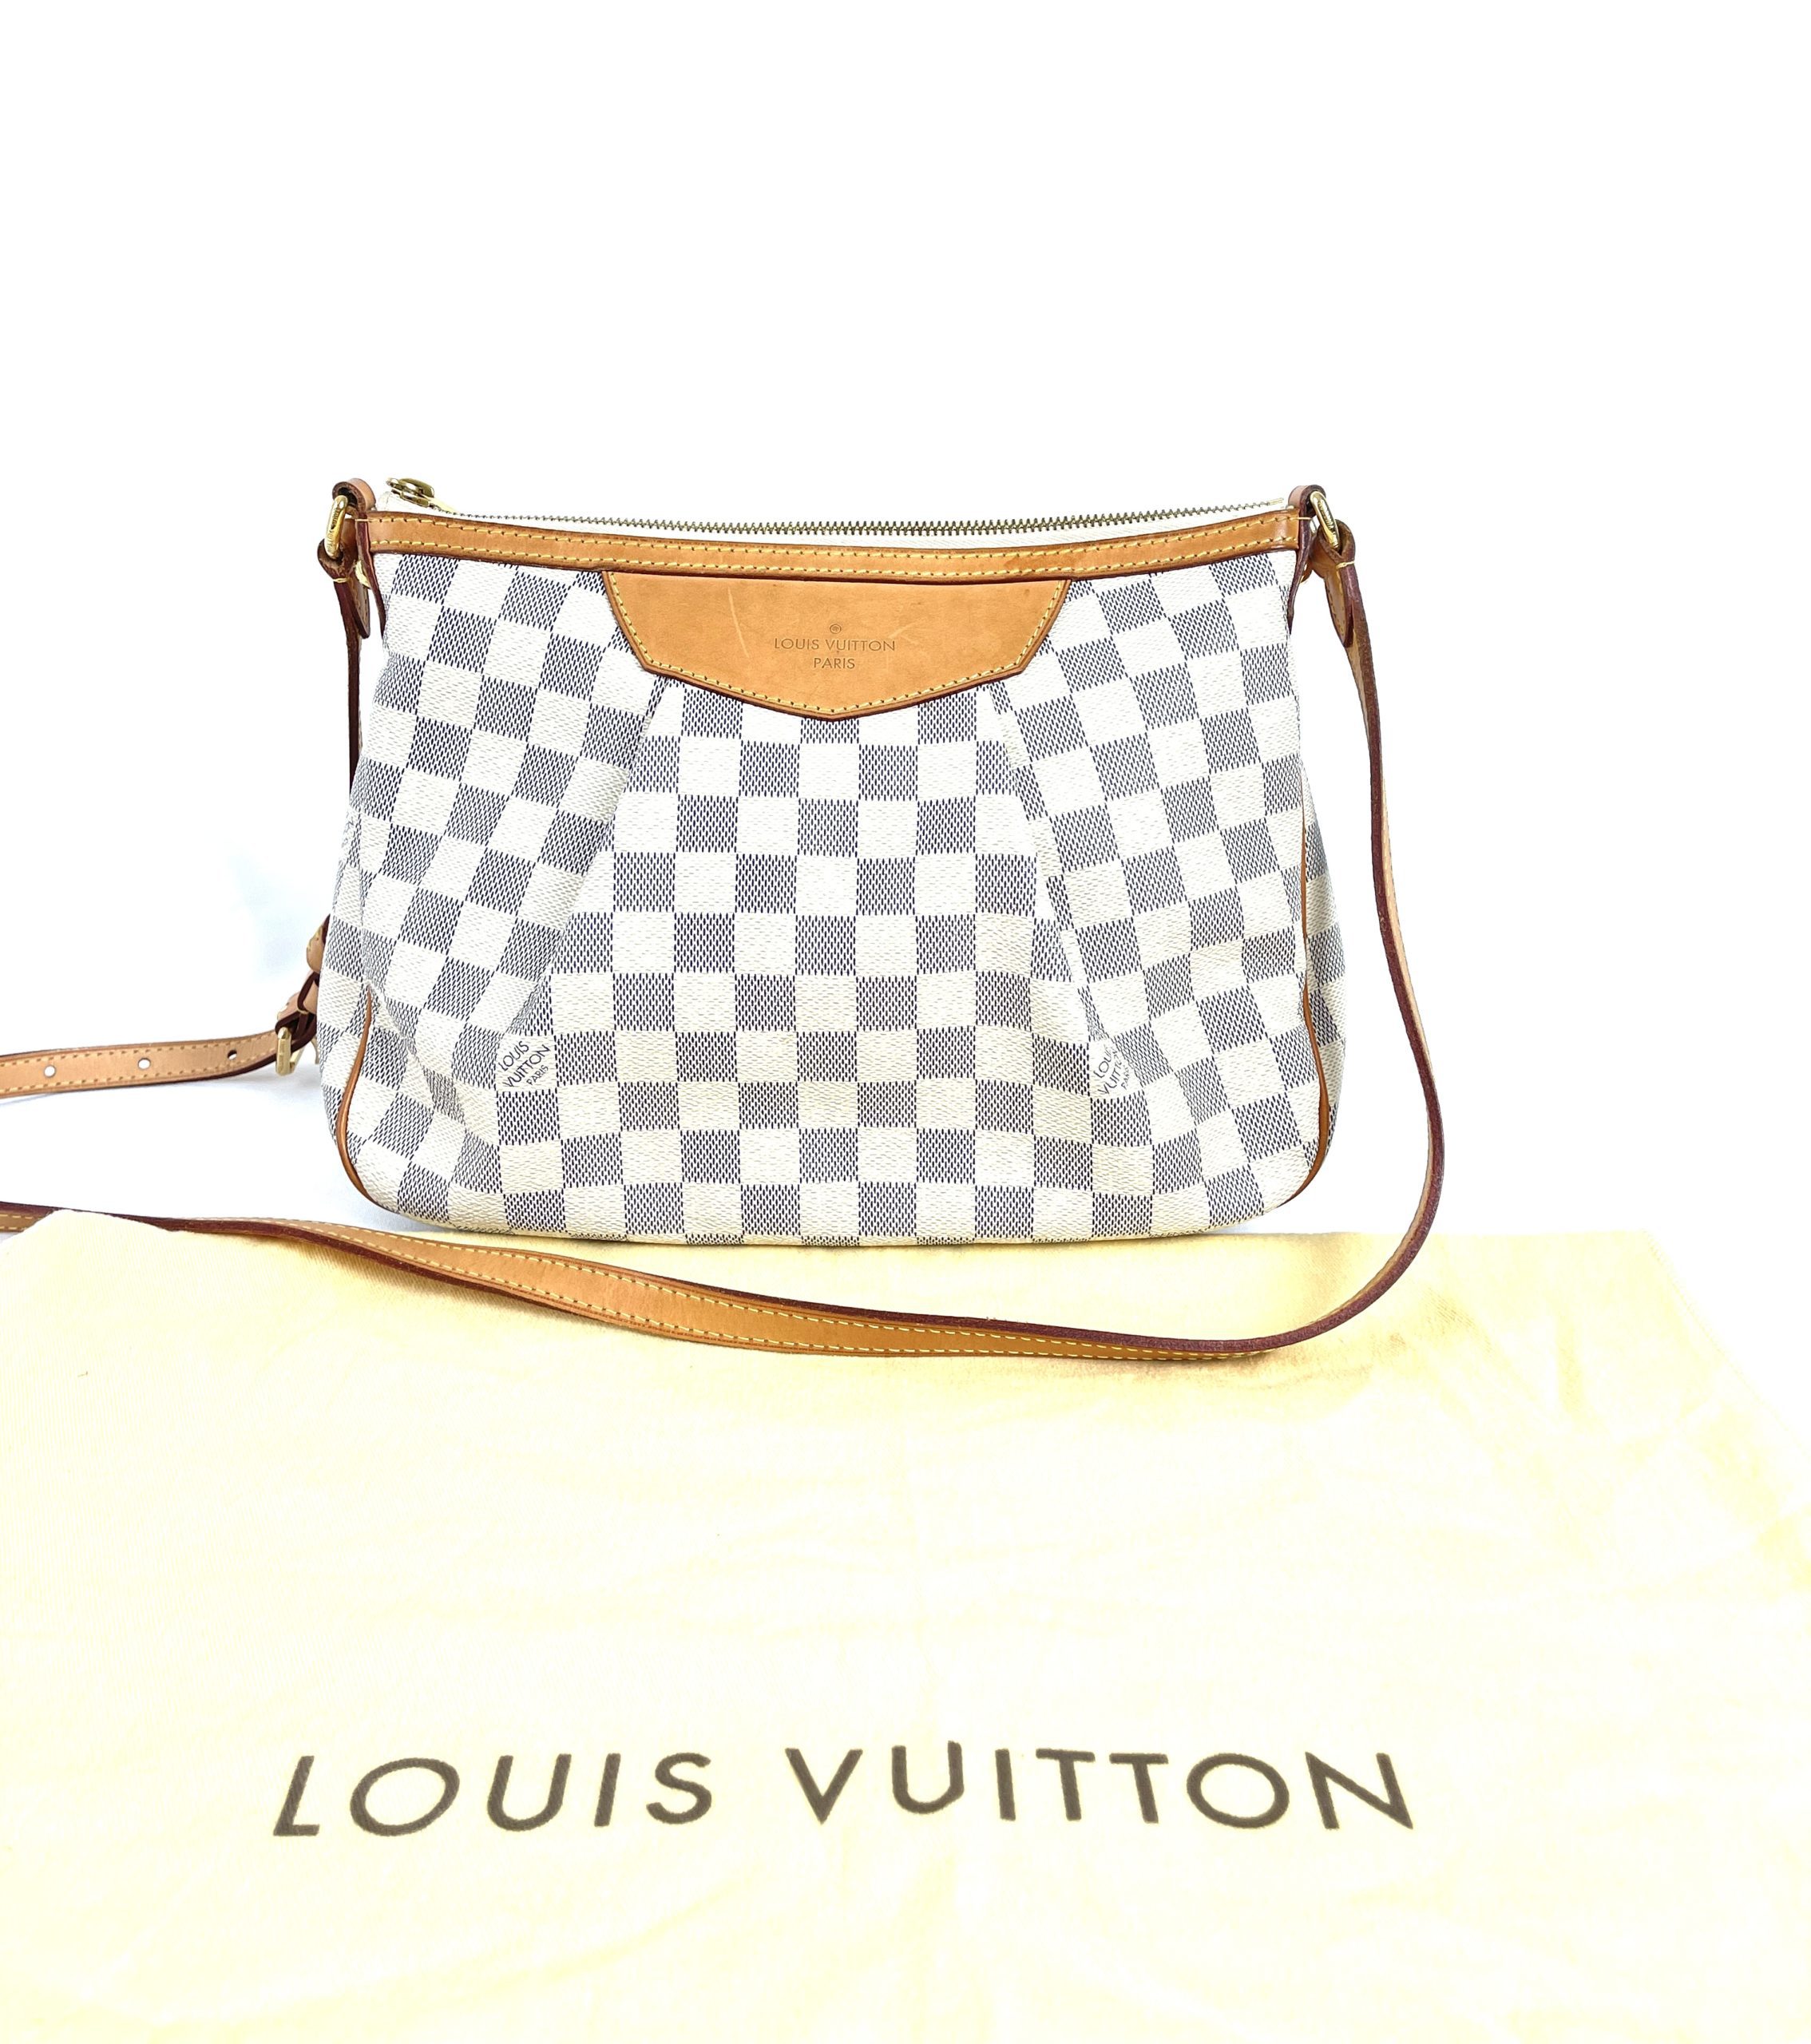 Louis Vuitton Damier Azur Siracusa PM - The Trove